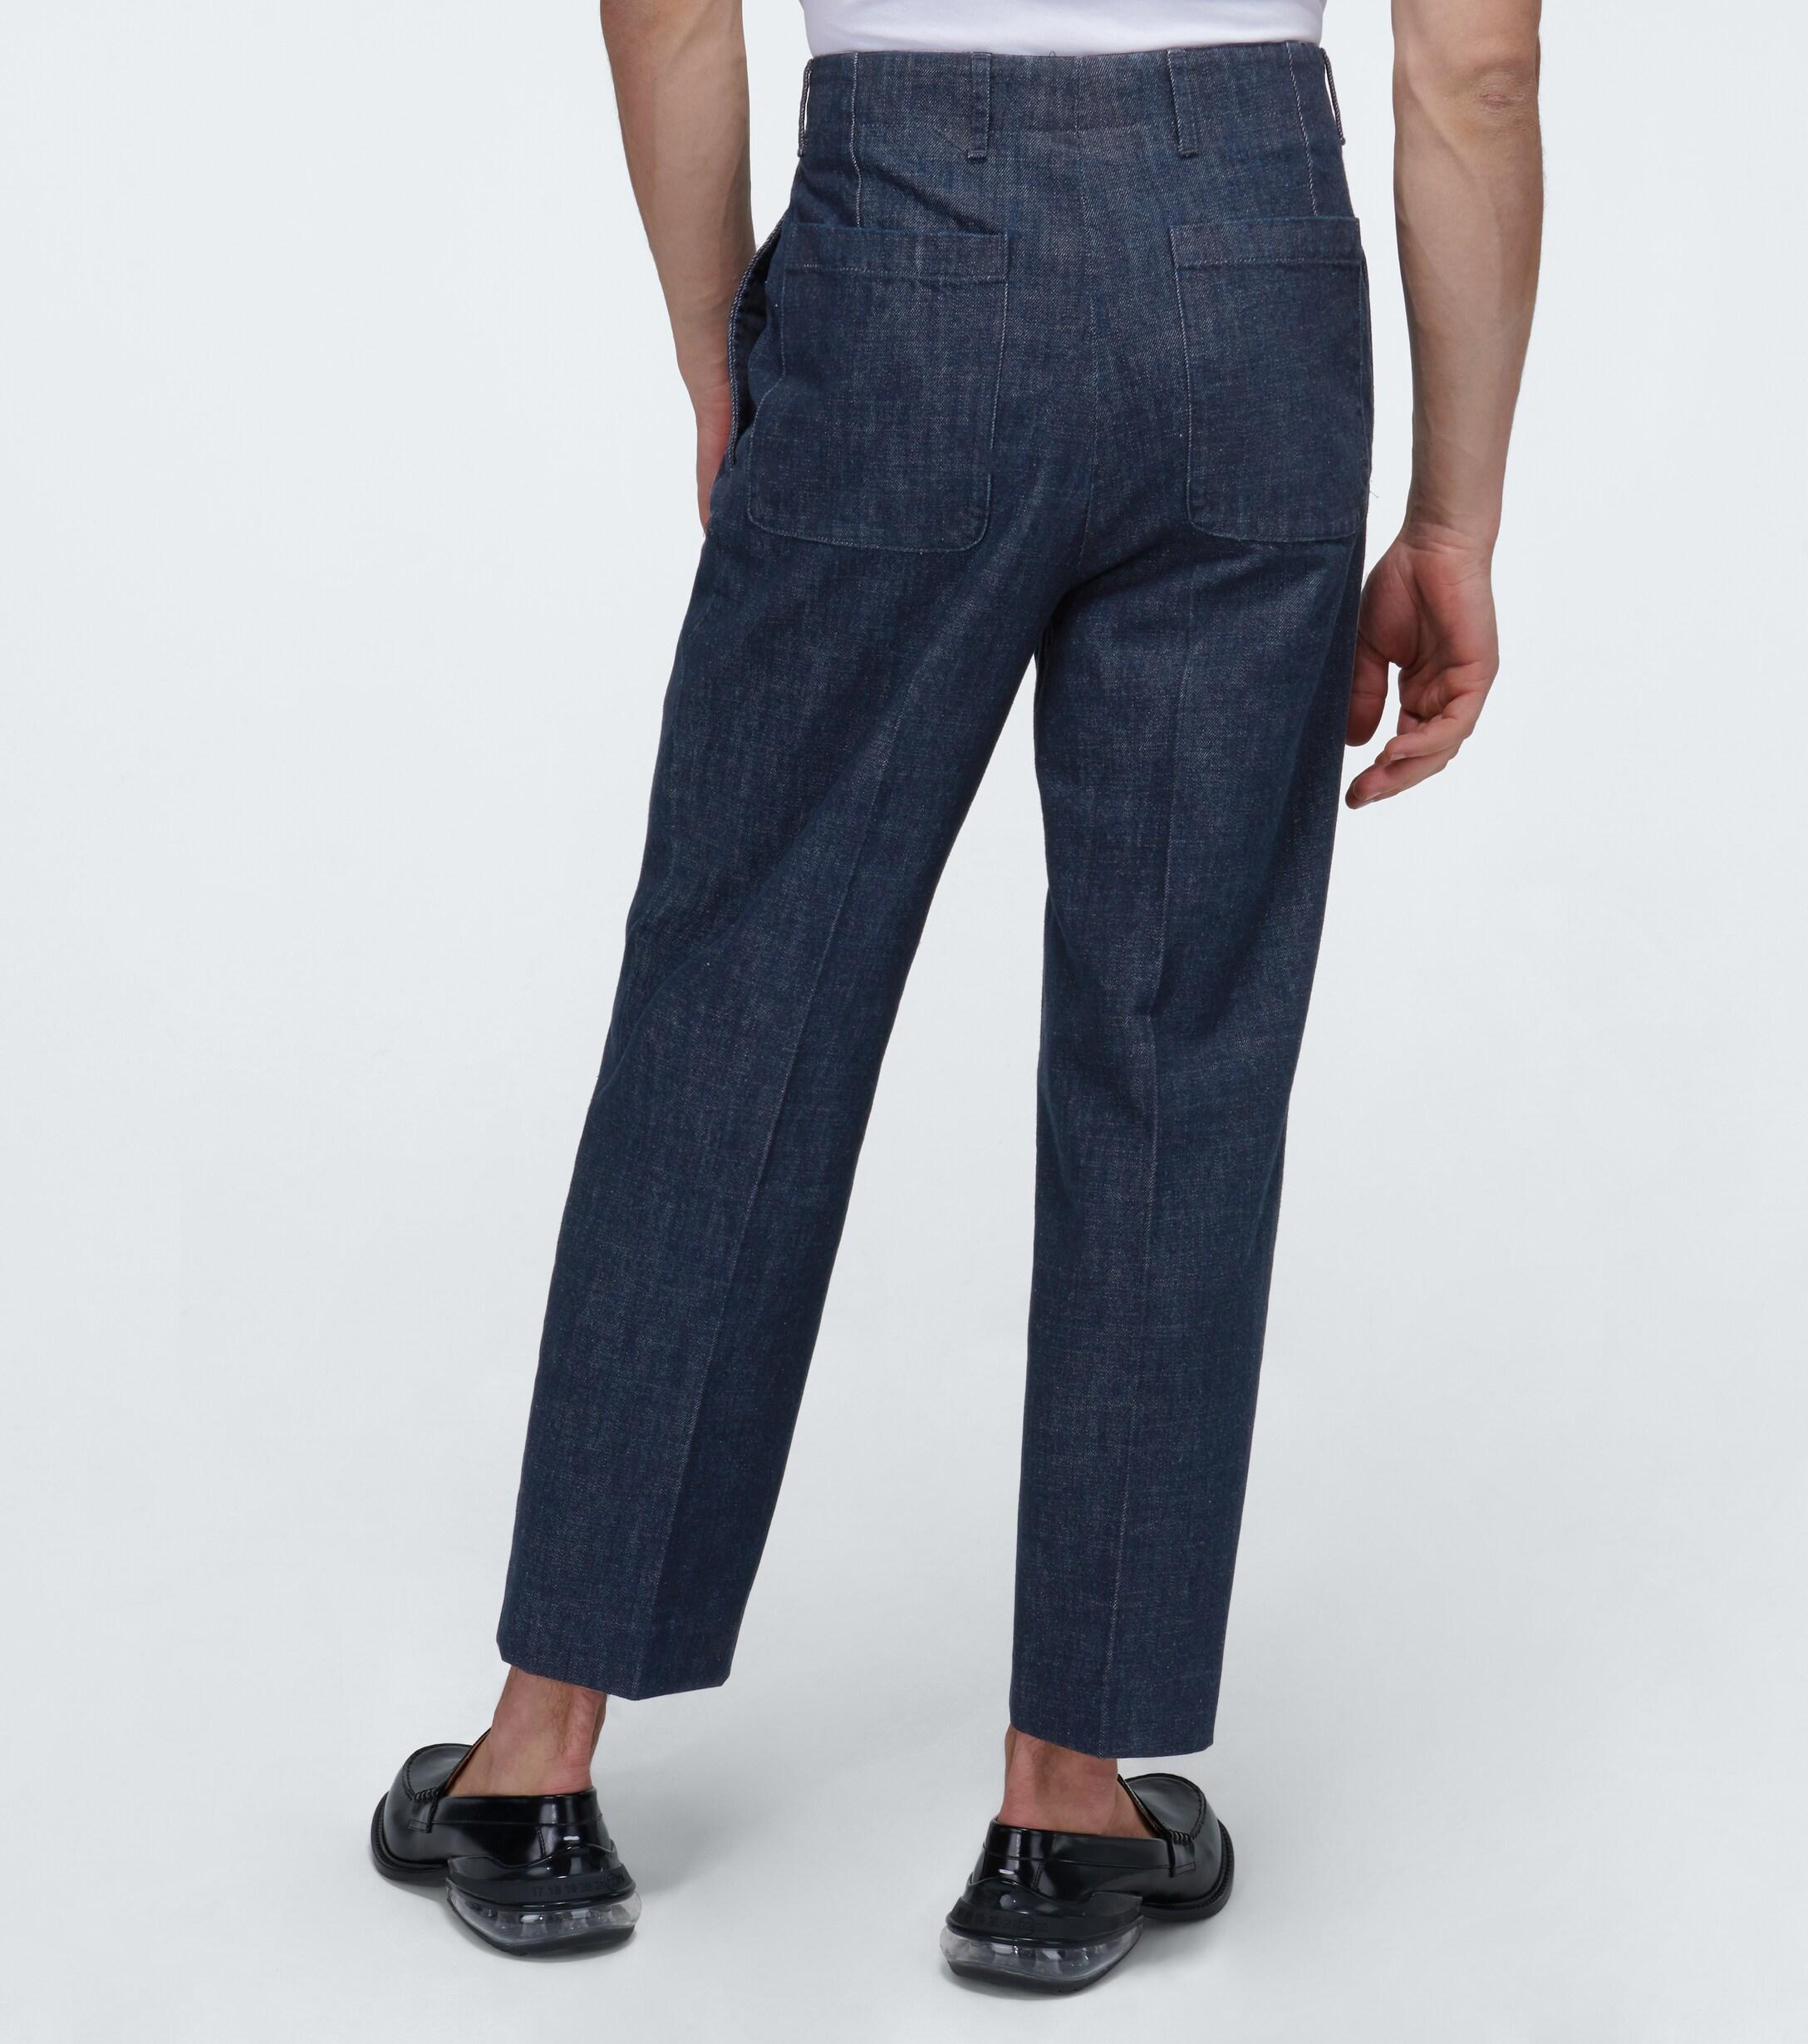 AMI chemise jean bleu coton à manches longues Taille L RRP £ 195 TR 312